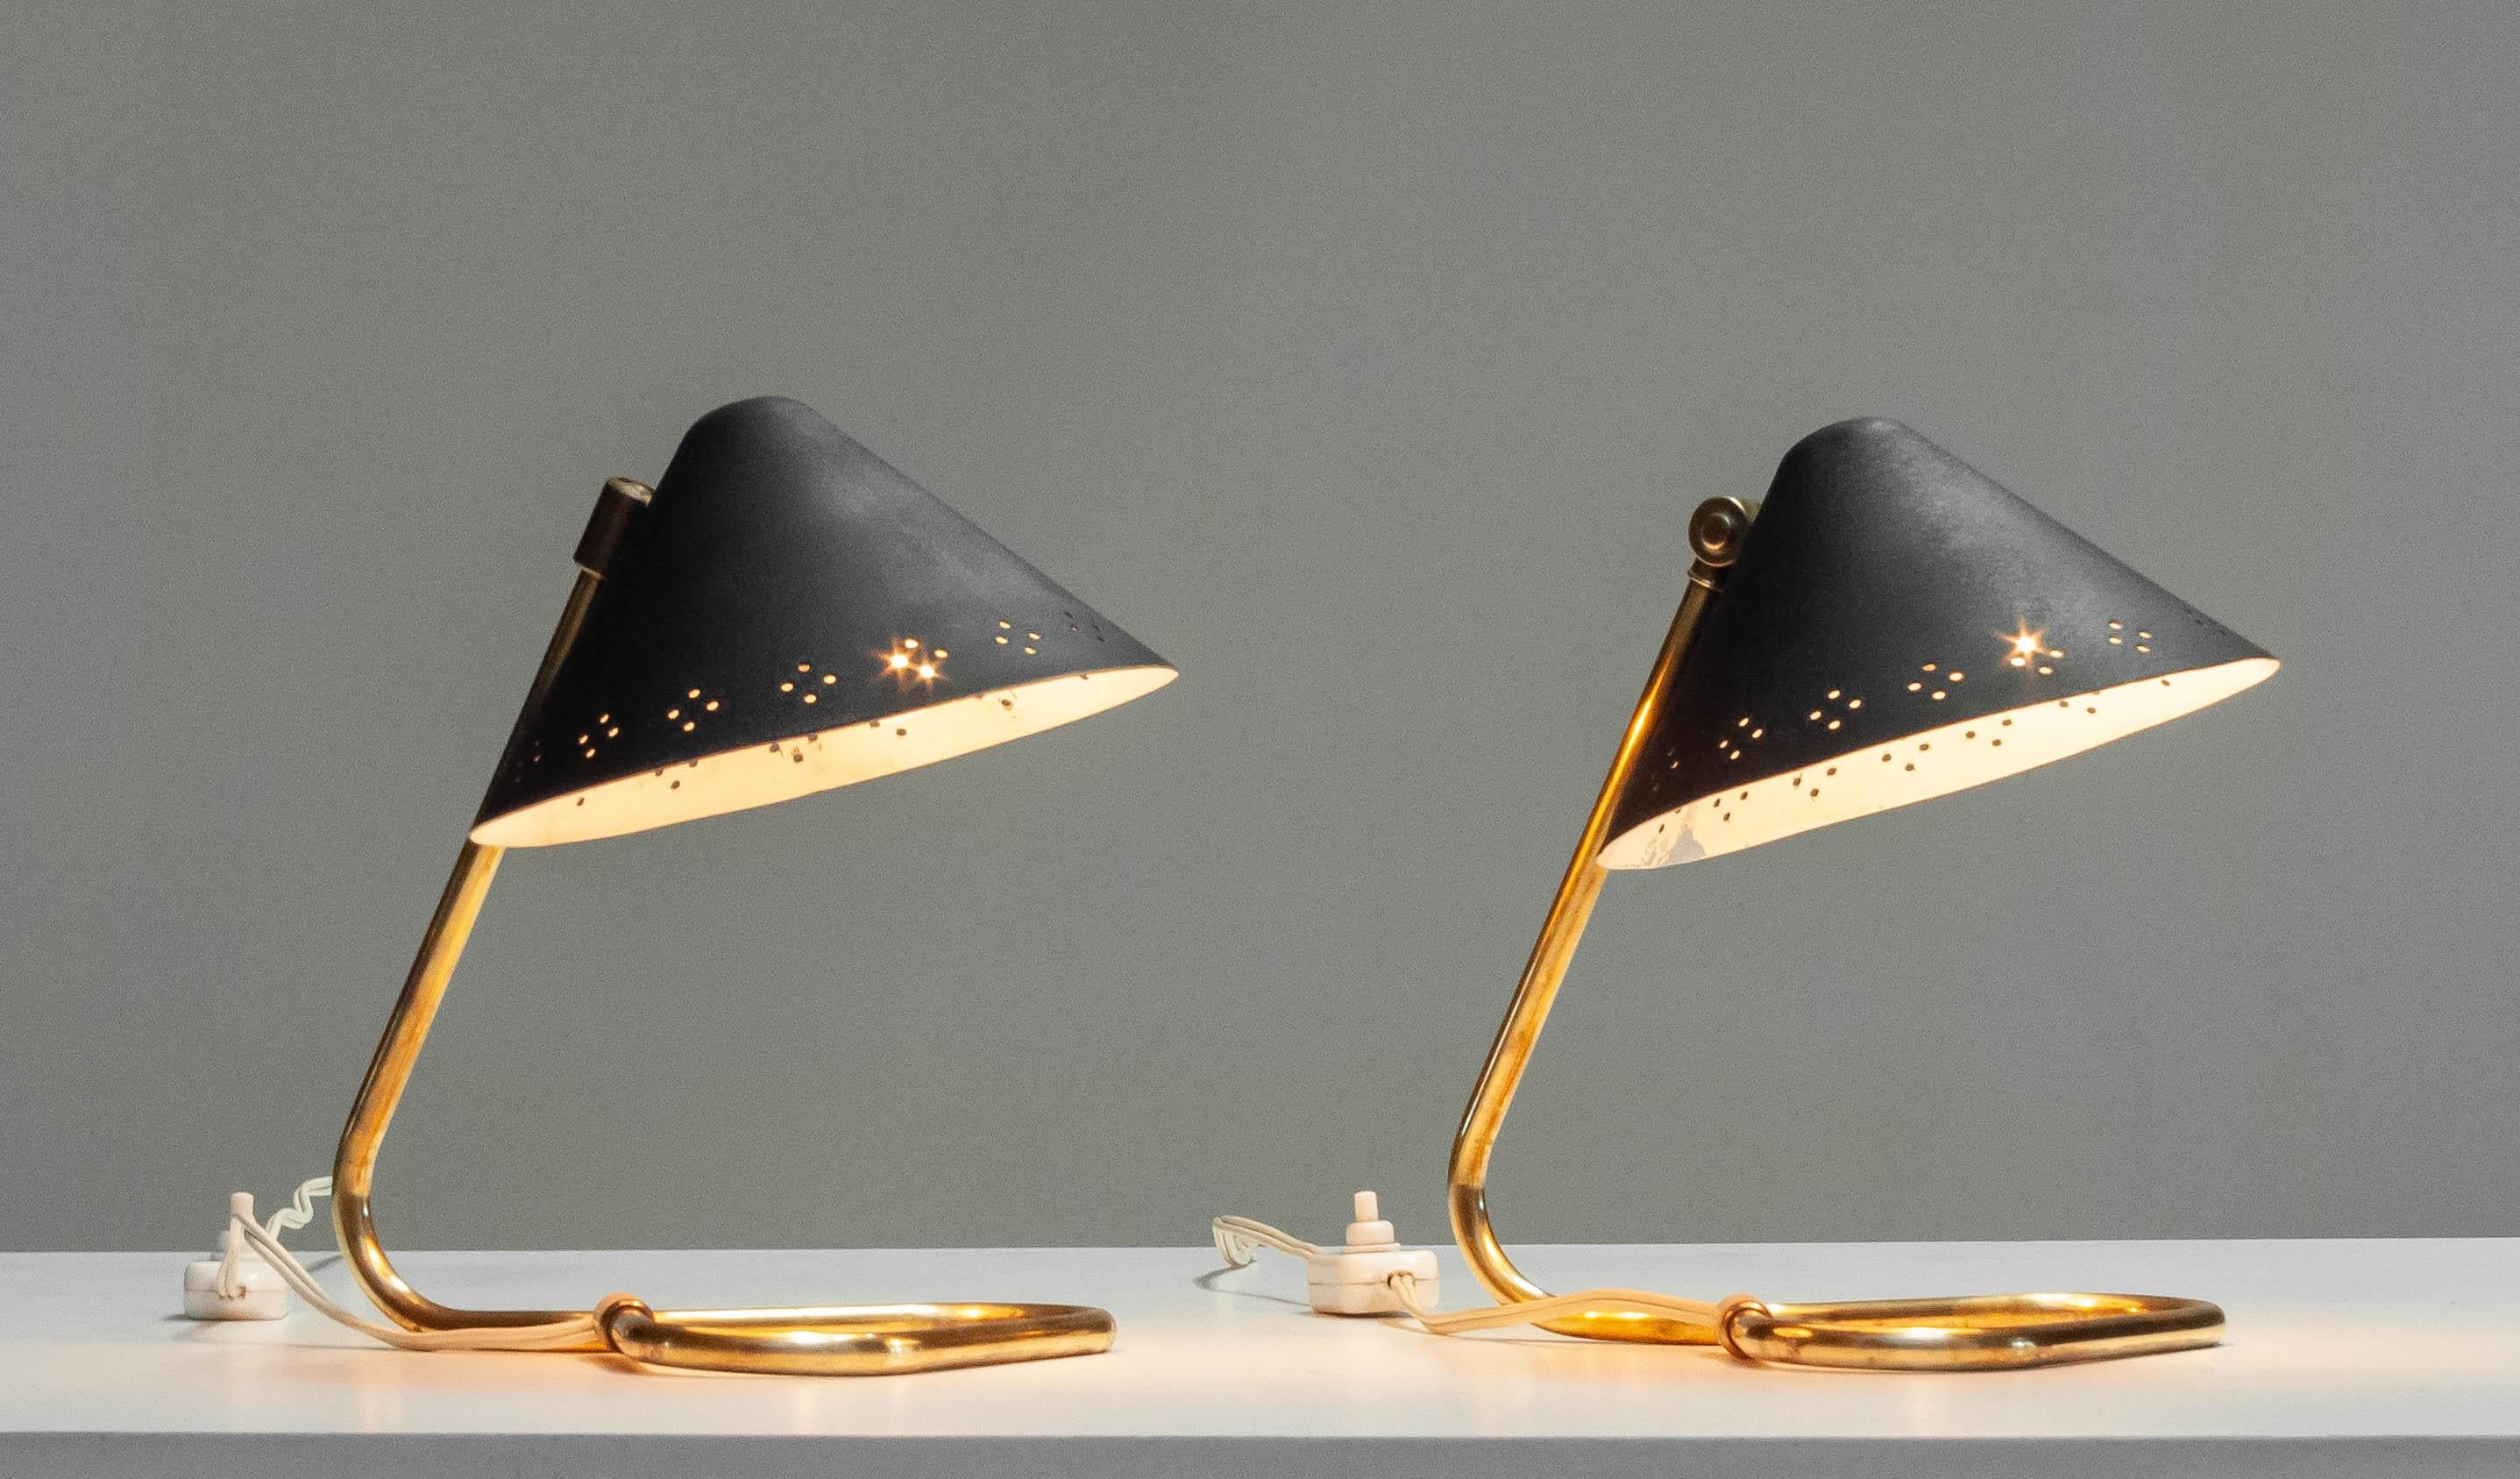 Ein Paar Erik Warna 'GK14' Tischlampen aus den 1950er Jahren mit schwarzem und messingfarbenem perforiertem Schirm. 
Die Schirme sind nach oben oder unten verstellbar. Produziert von Gnosjö Konstsmide Rydahls in den 1950er Jahren in Schweden.
Alle